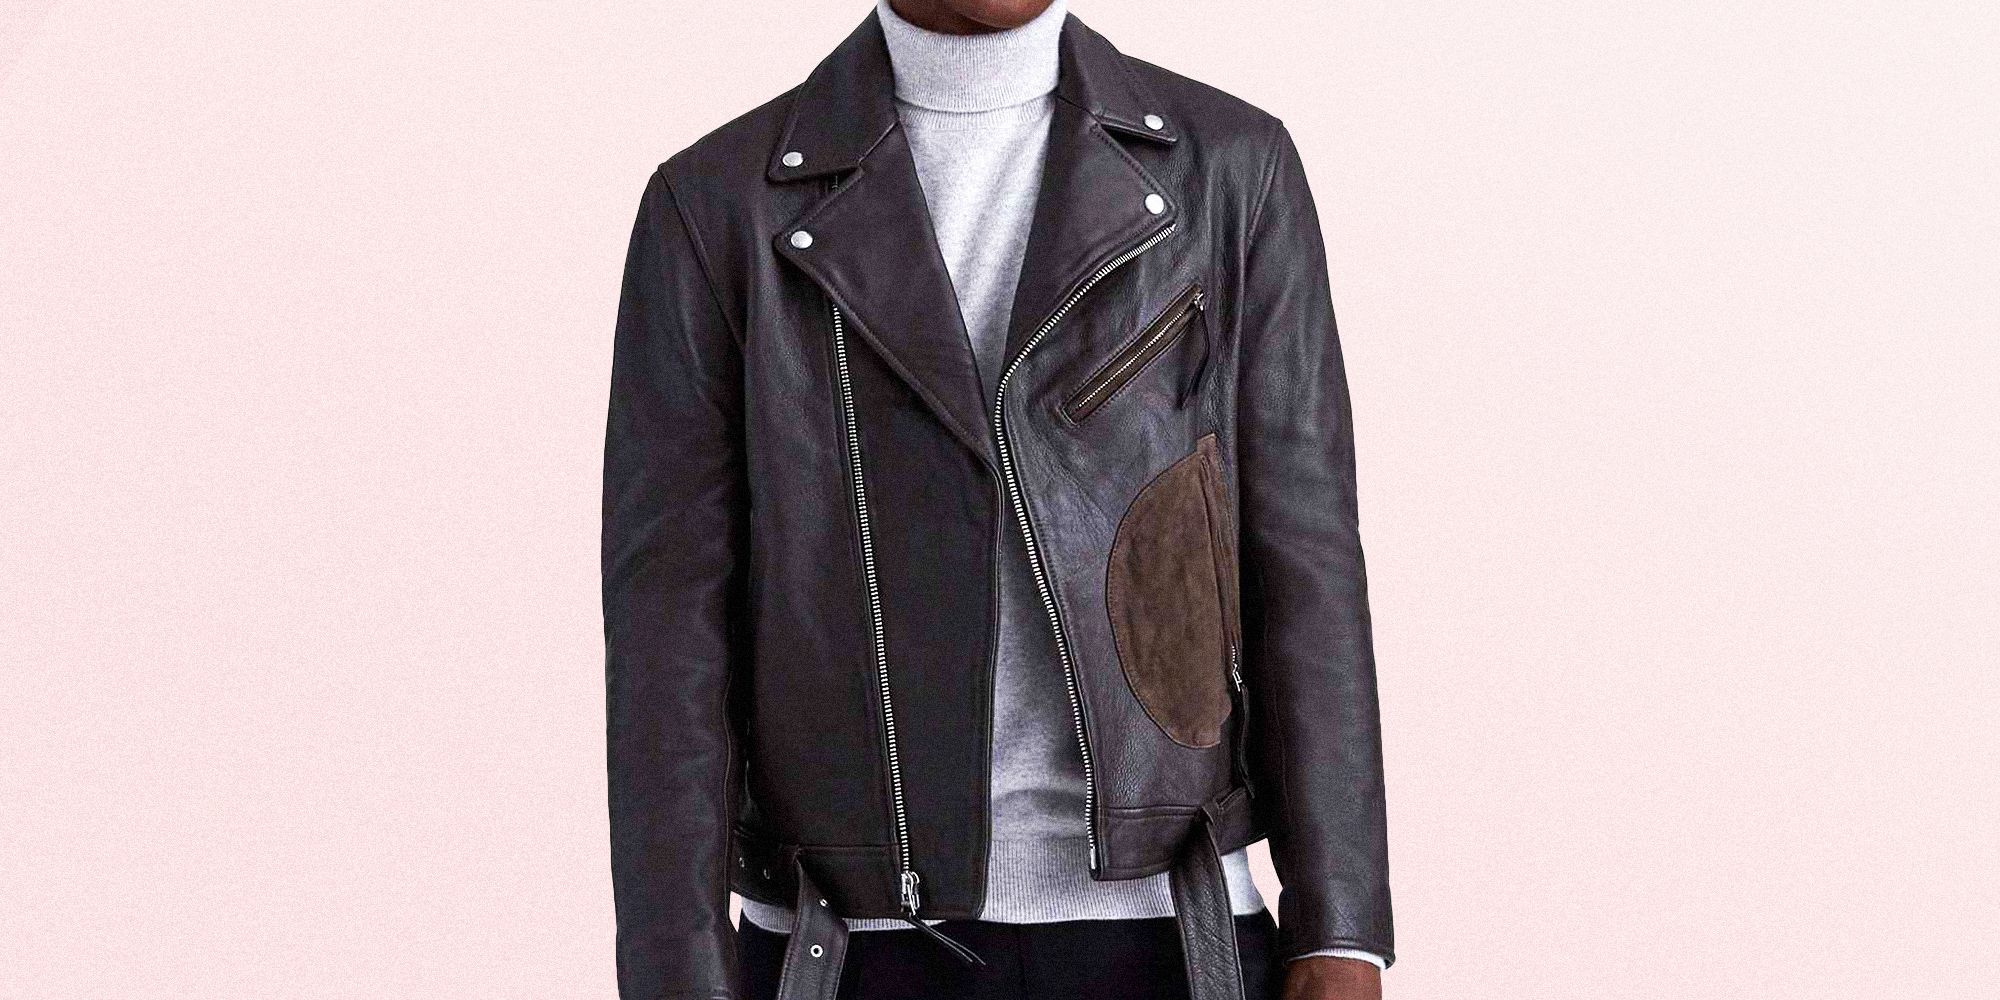 zara man leather jacket prices